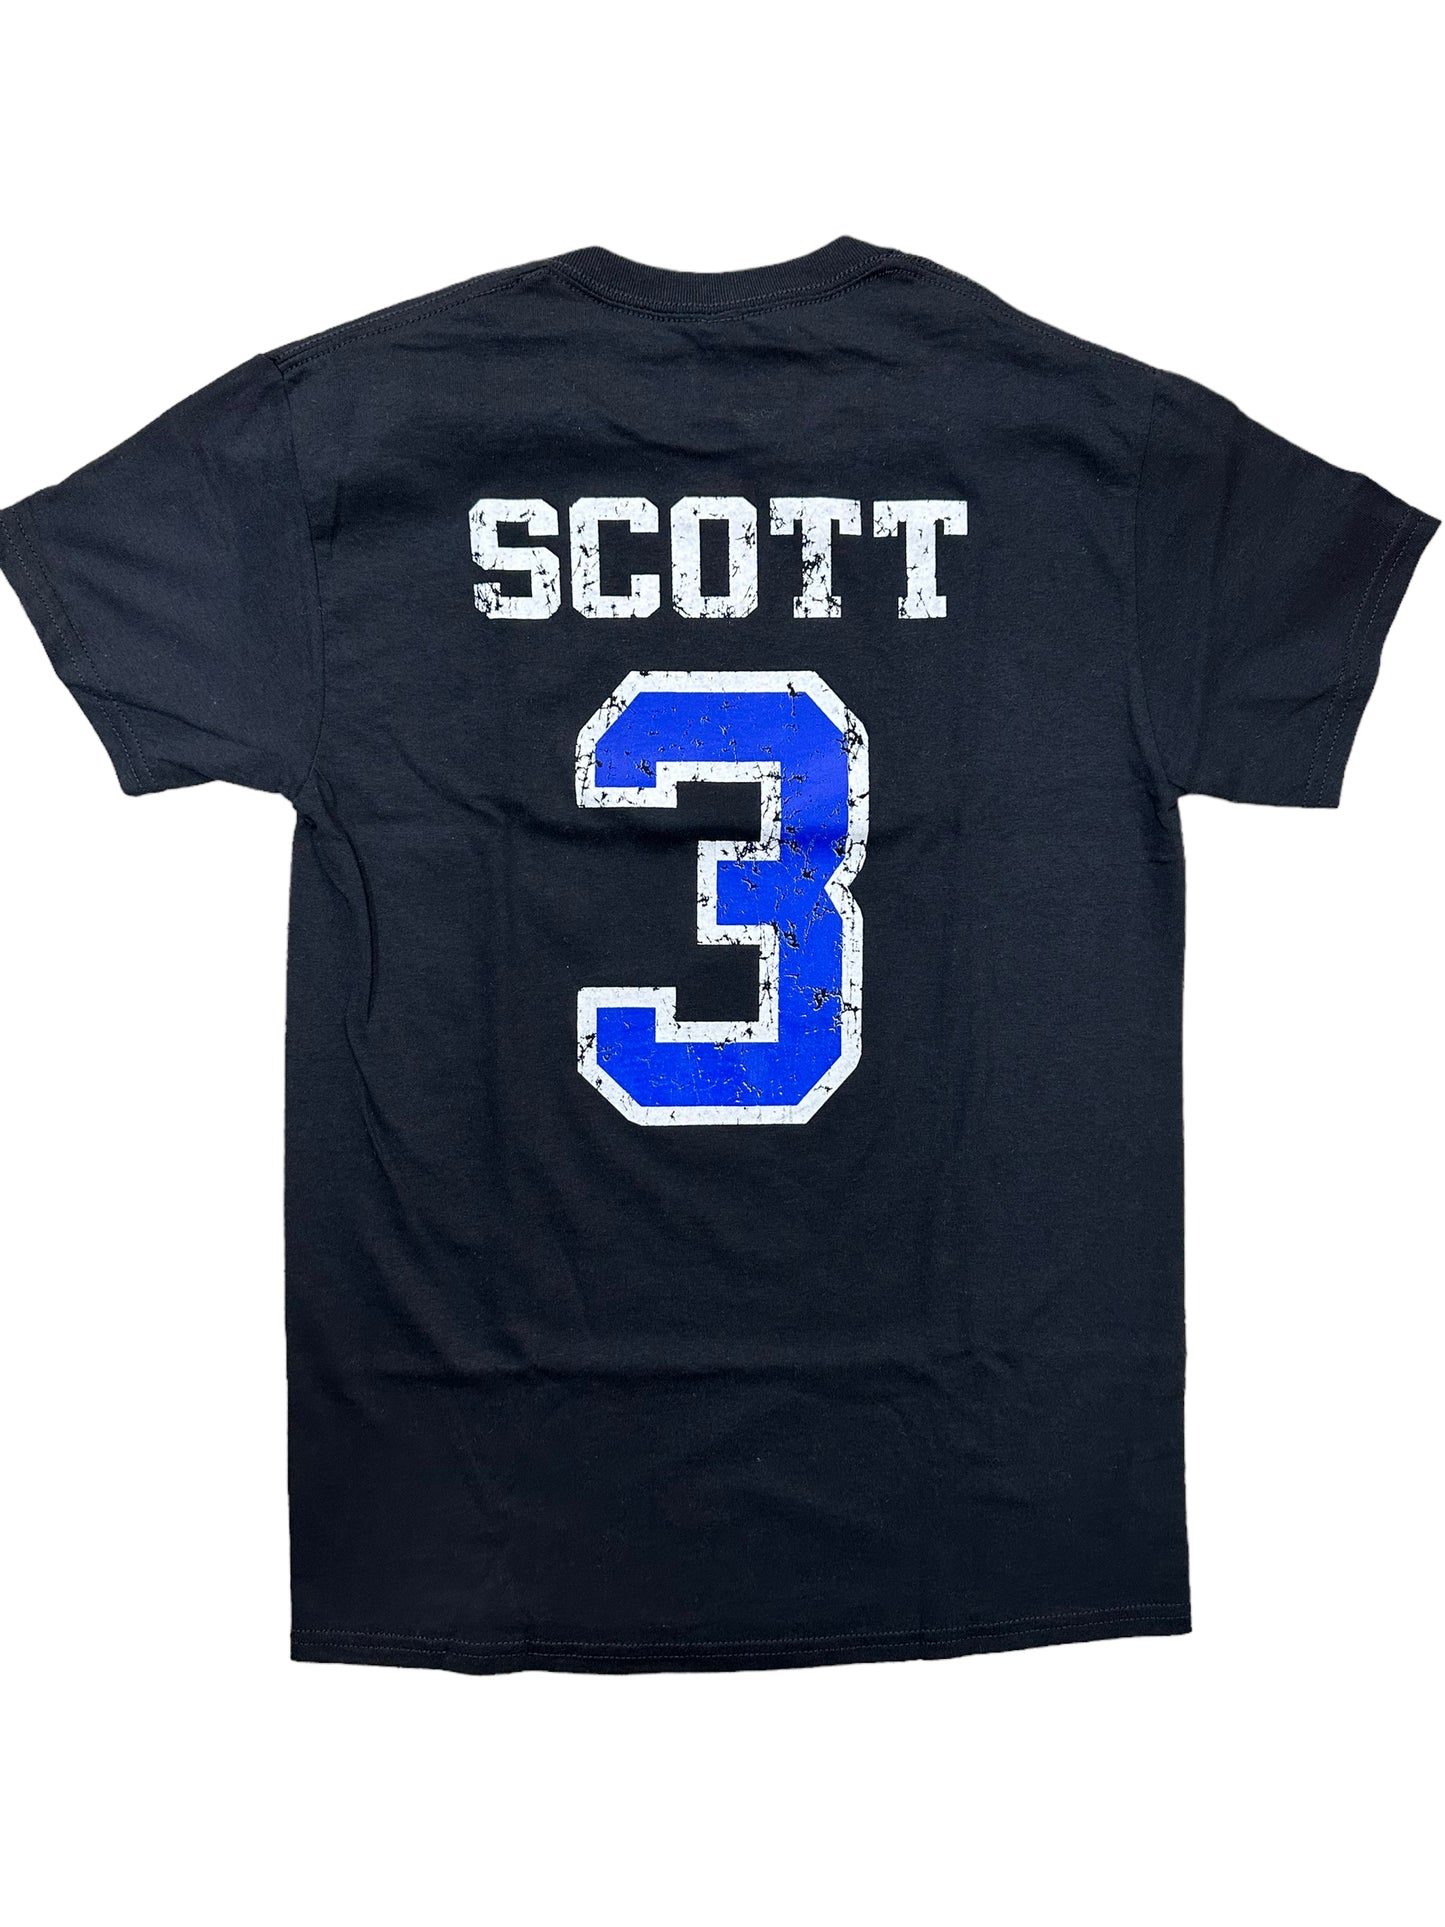 Scott 3 One Tree Hill – T Shirt – Black